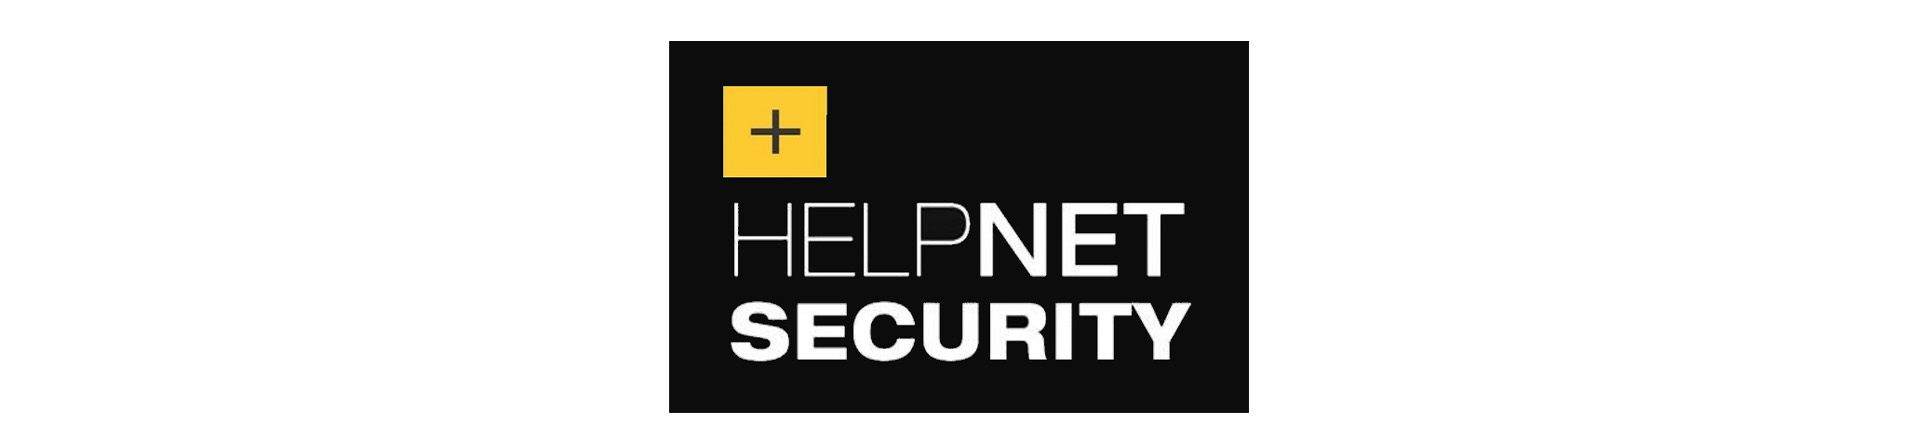 help net security